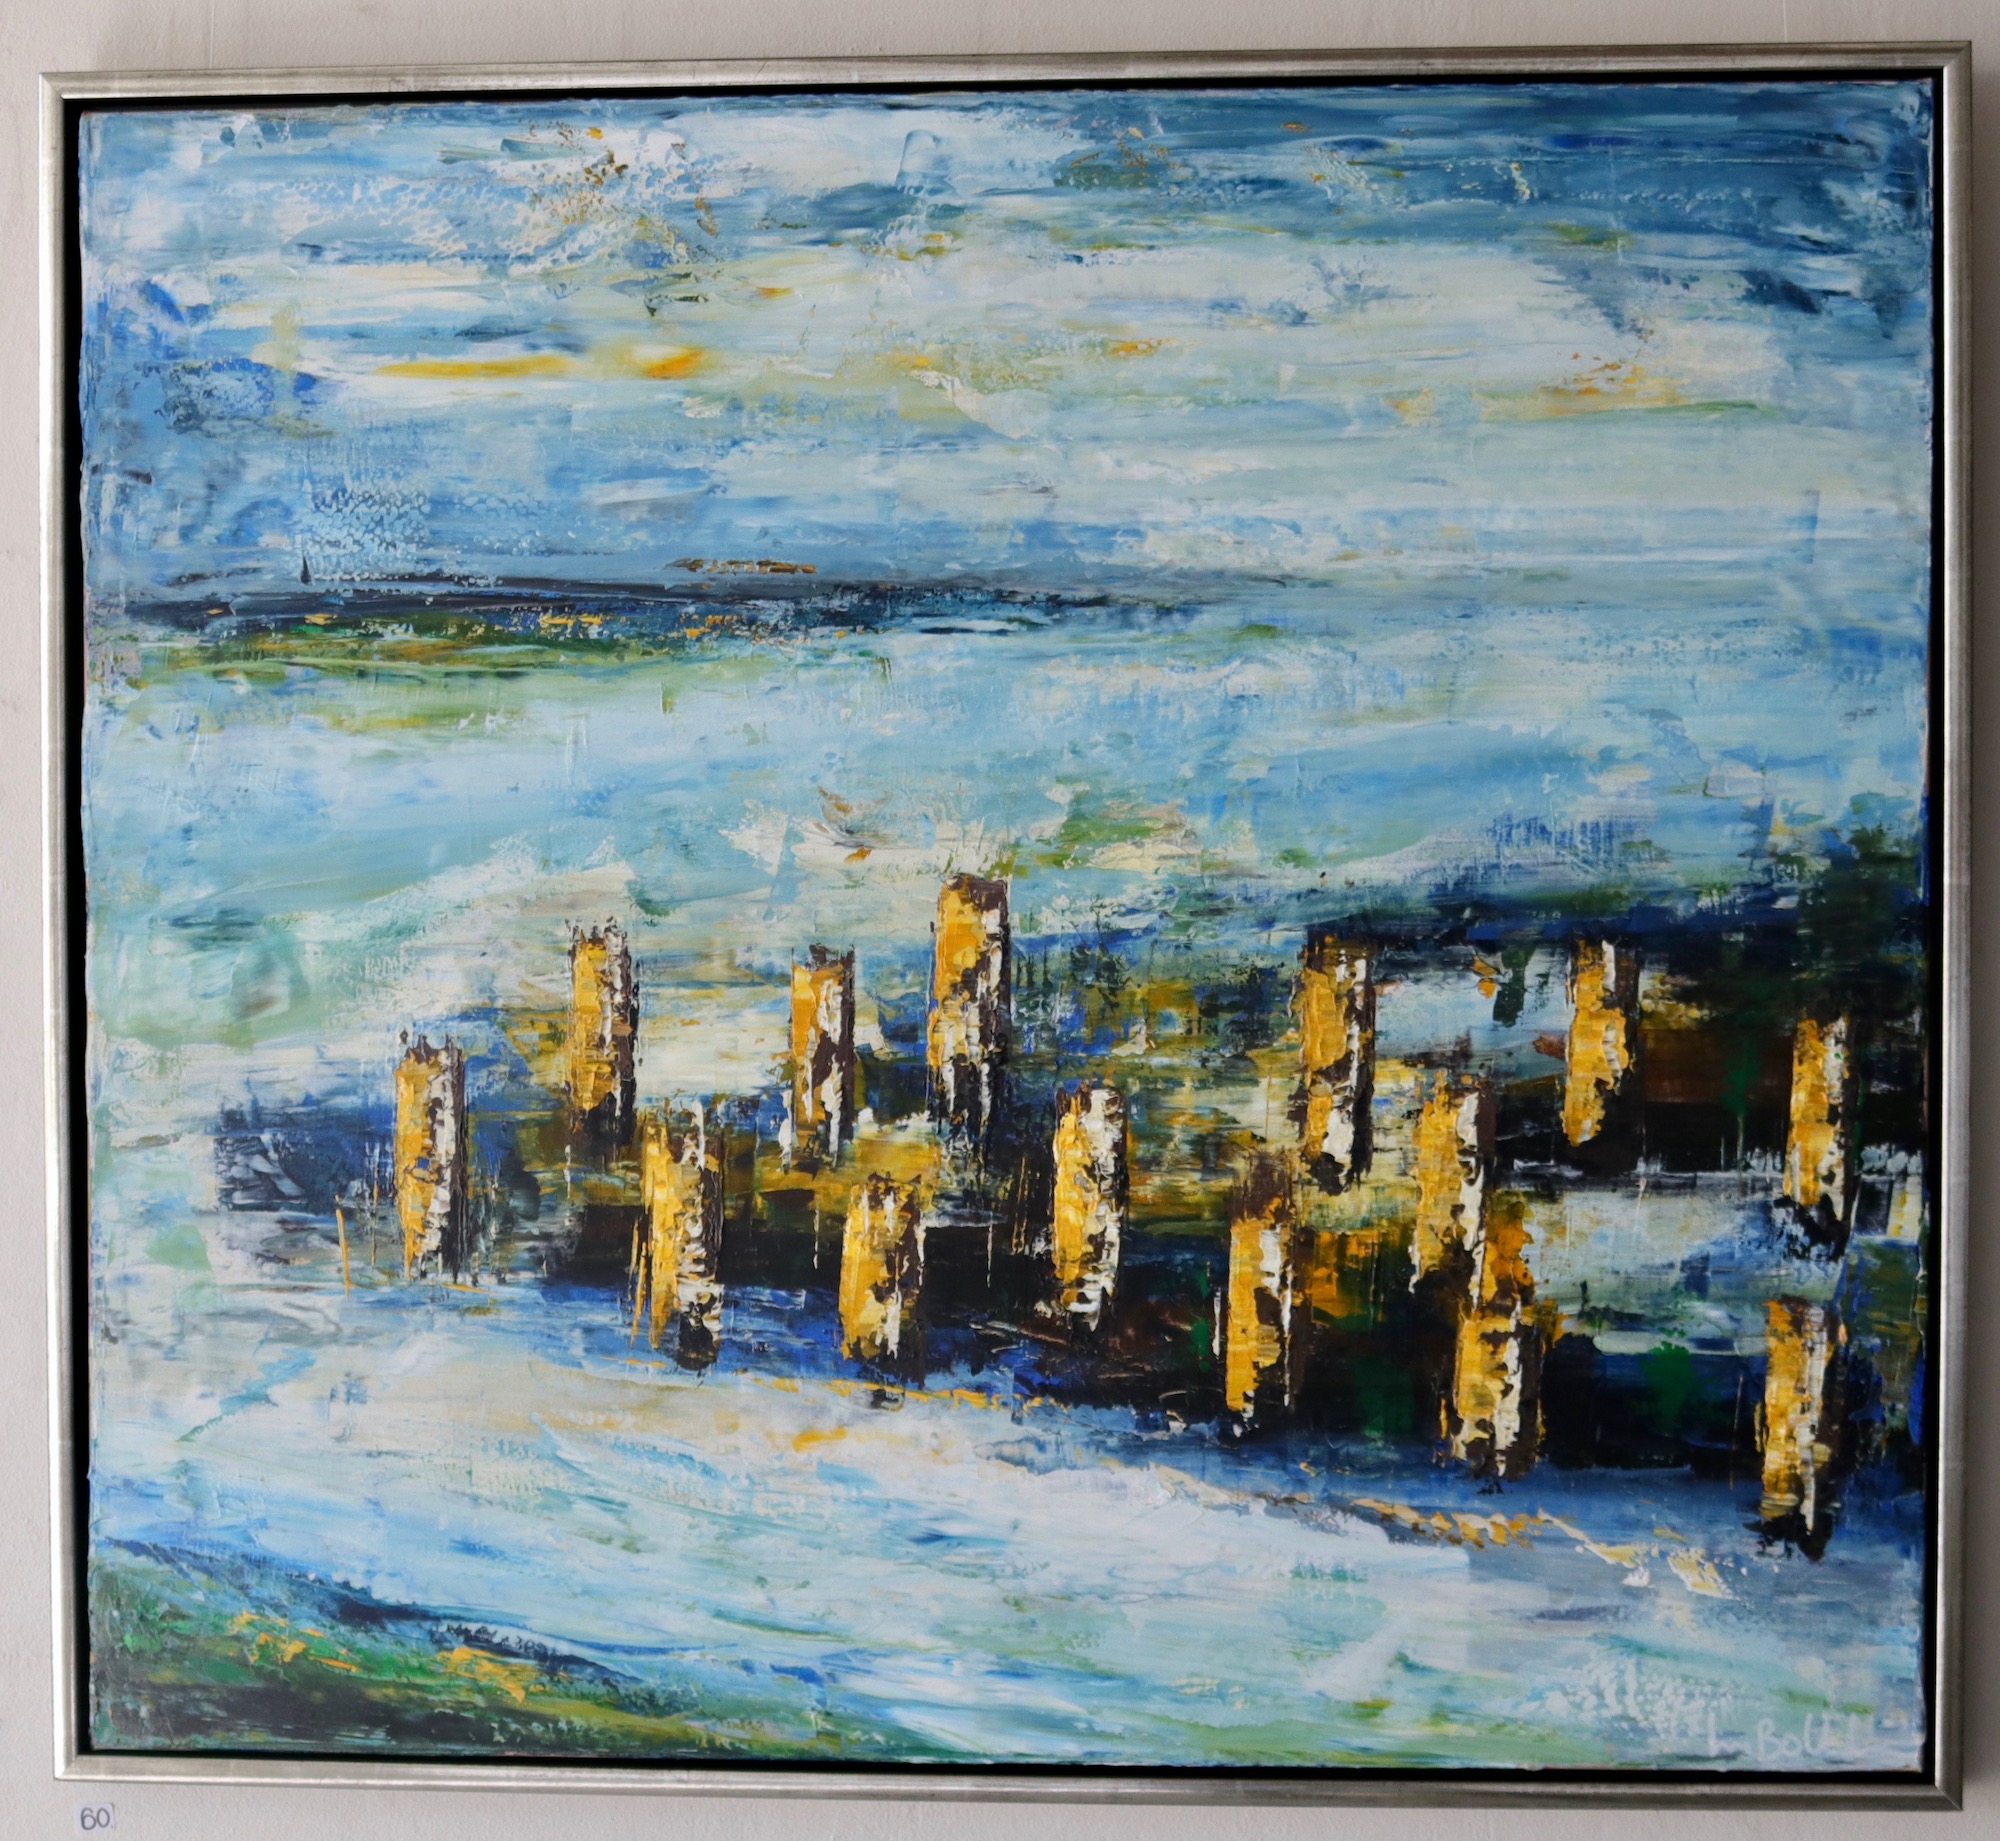 Maleri af Lars Bollerslev med titlen "Kultiveret landskab". Påskeudstilling 2022 Kunstforeningen Limfjorden